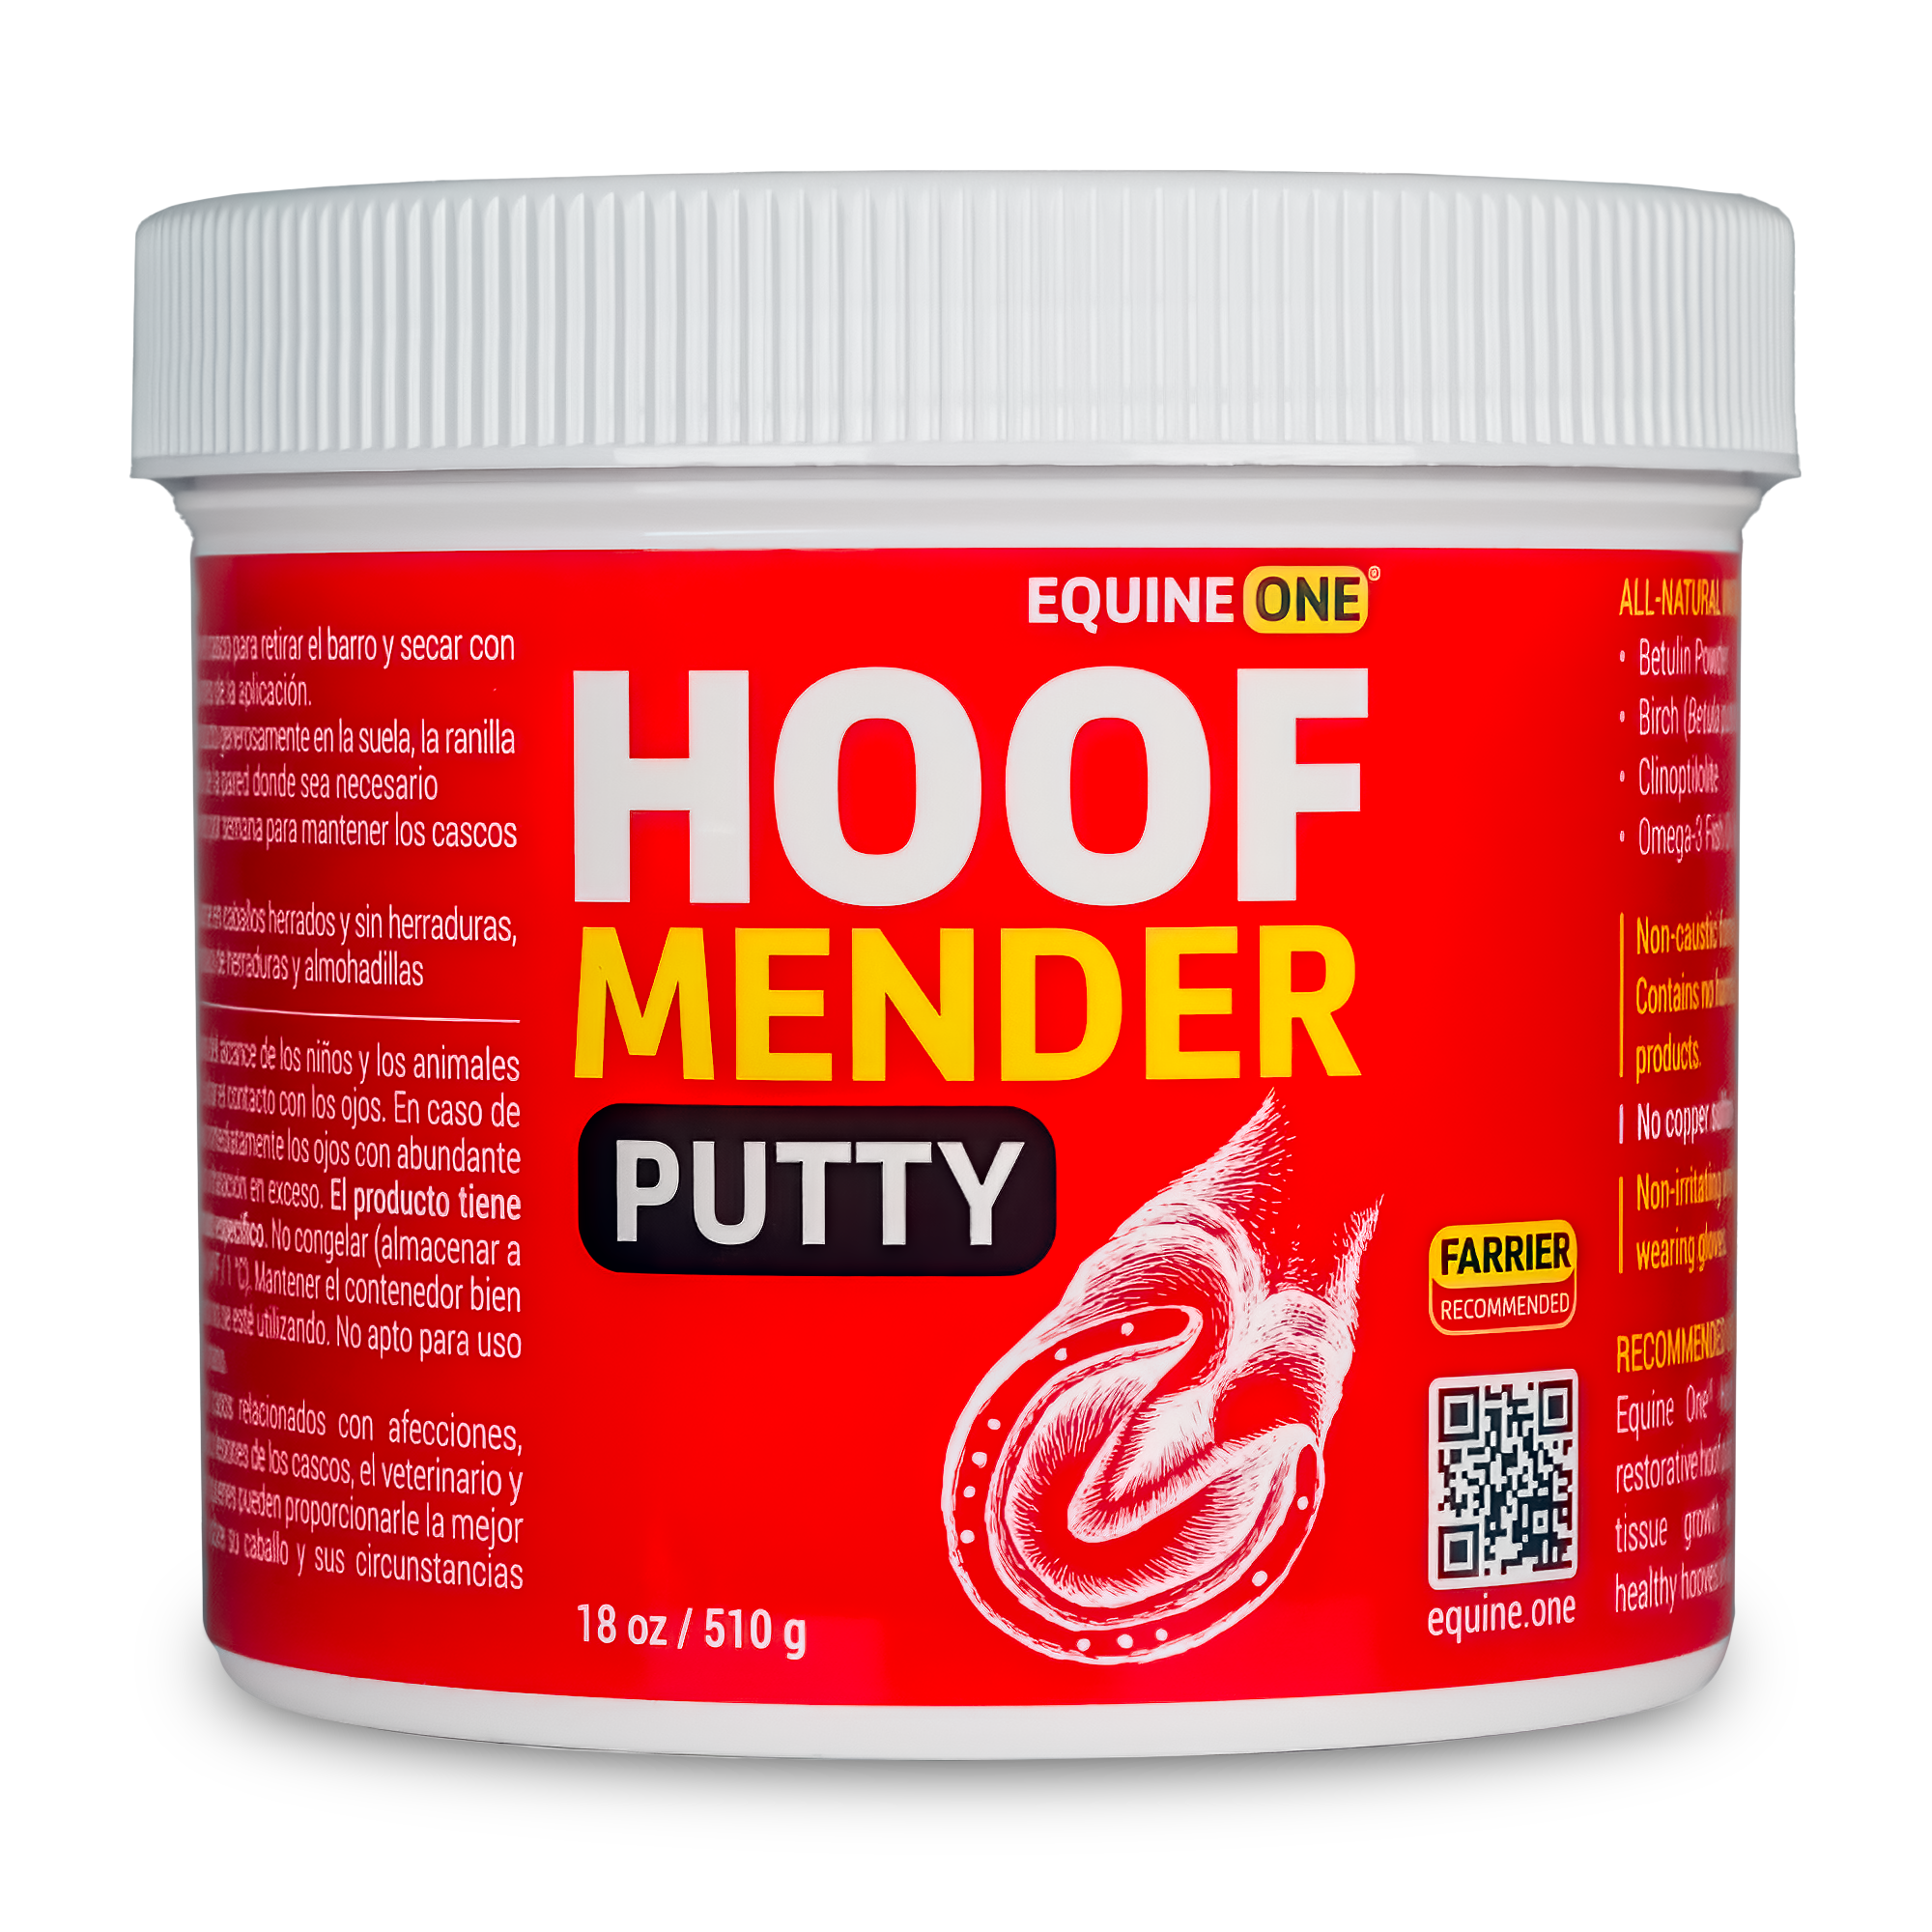 Hoof Mender Putty